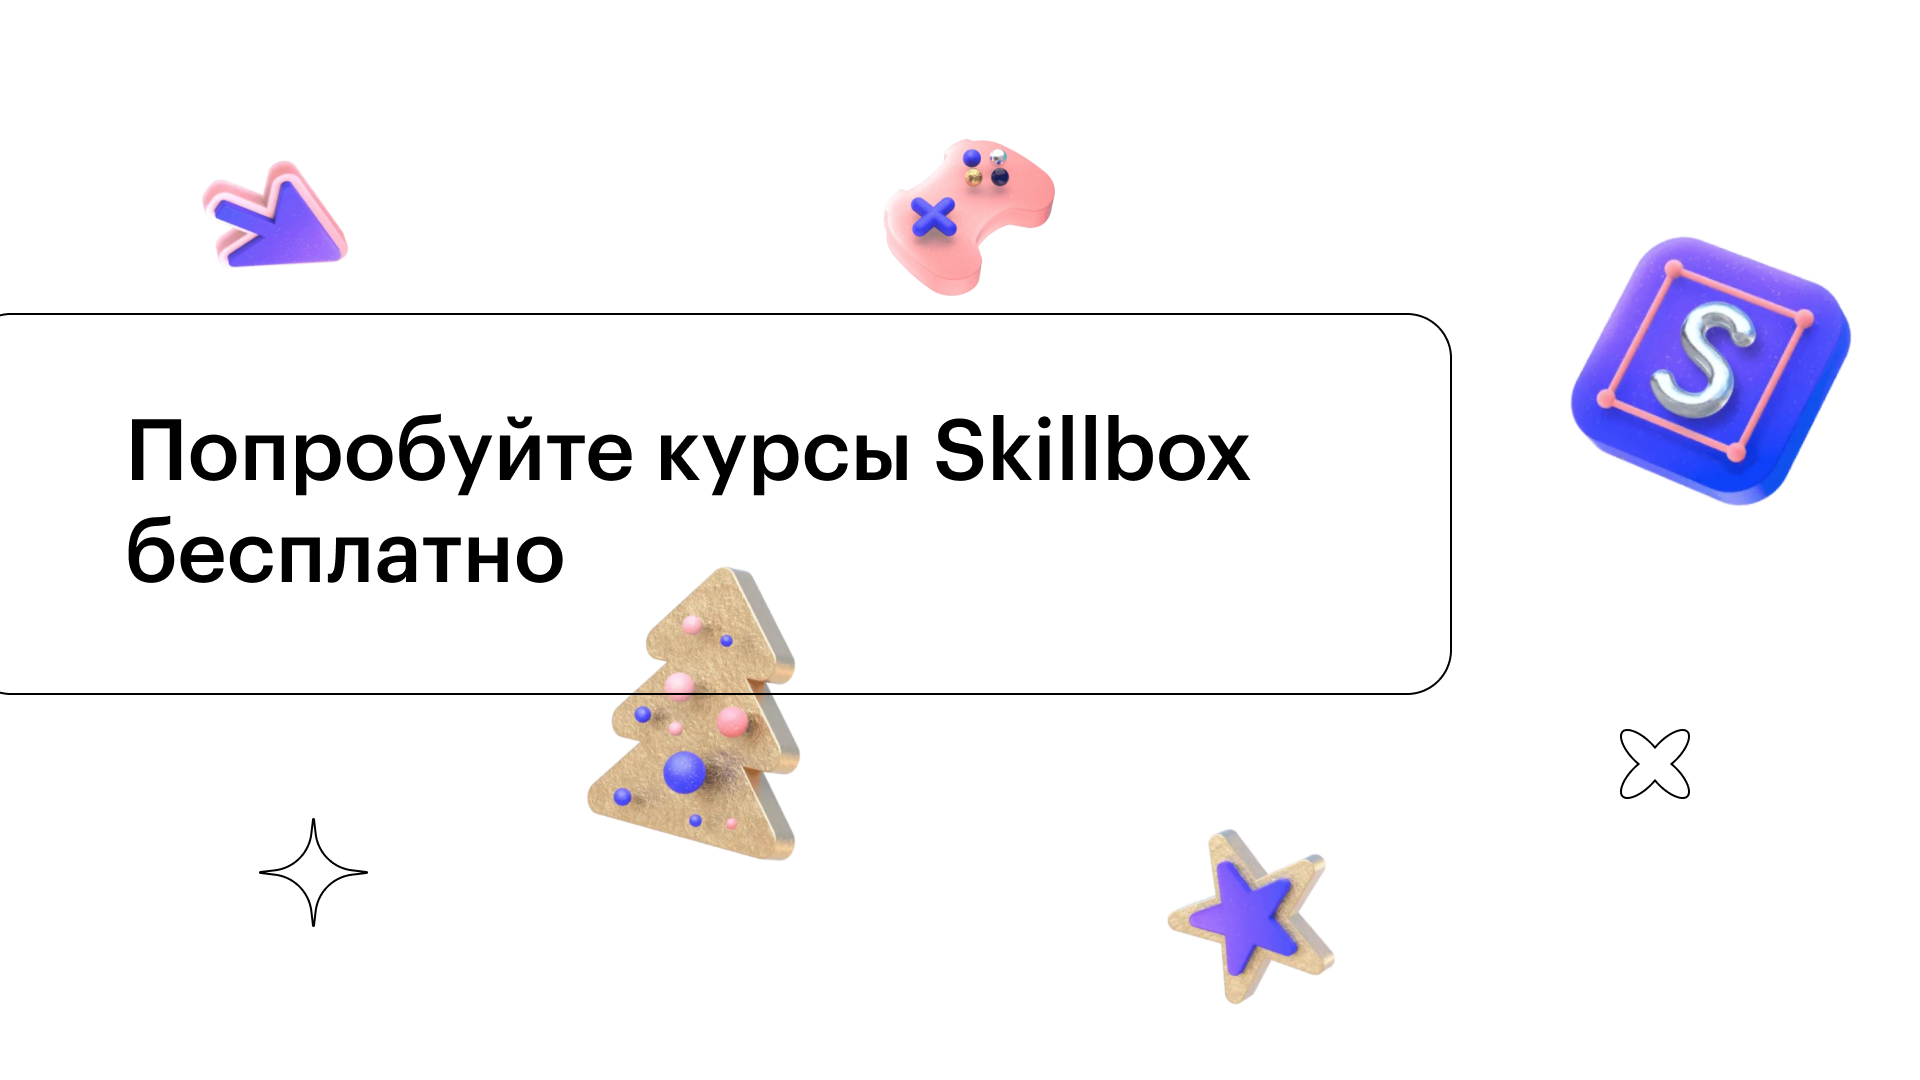 Gitlab skillbox. Skillbox. Скилбокс картинки. Старый логотип Skillbox. Логотип компании скиллбокс.